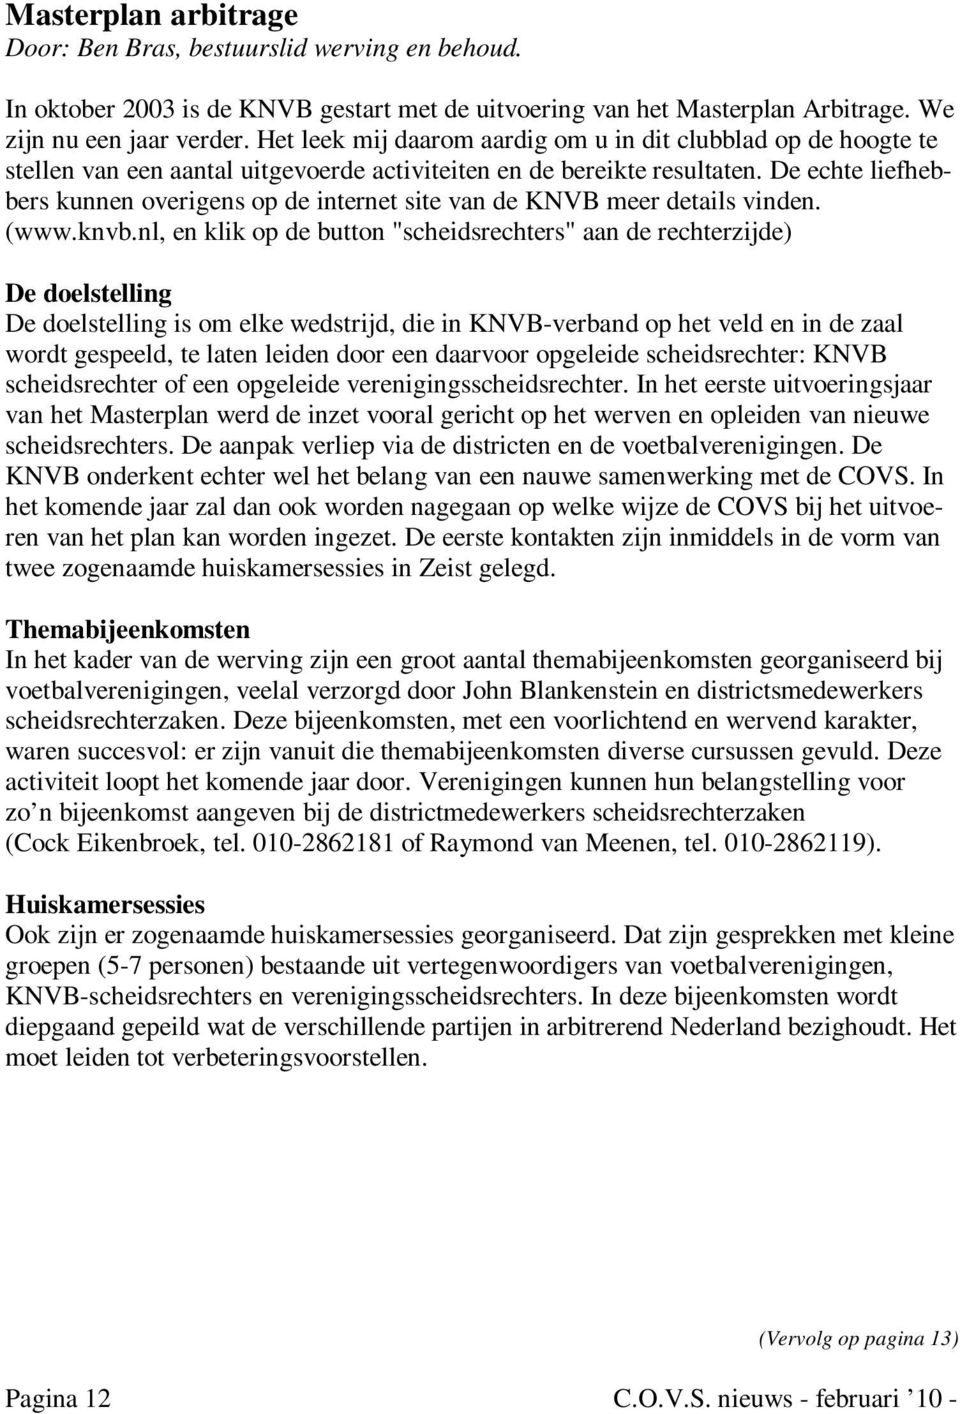 De echte liefhebbers kunnen overigens op de internet site van de KNVB meer details vinden. (www.knvb.